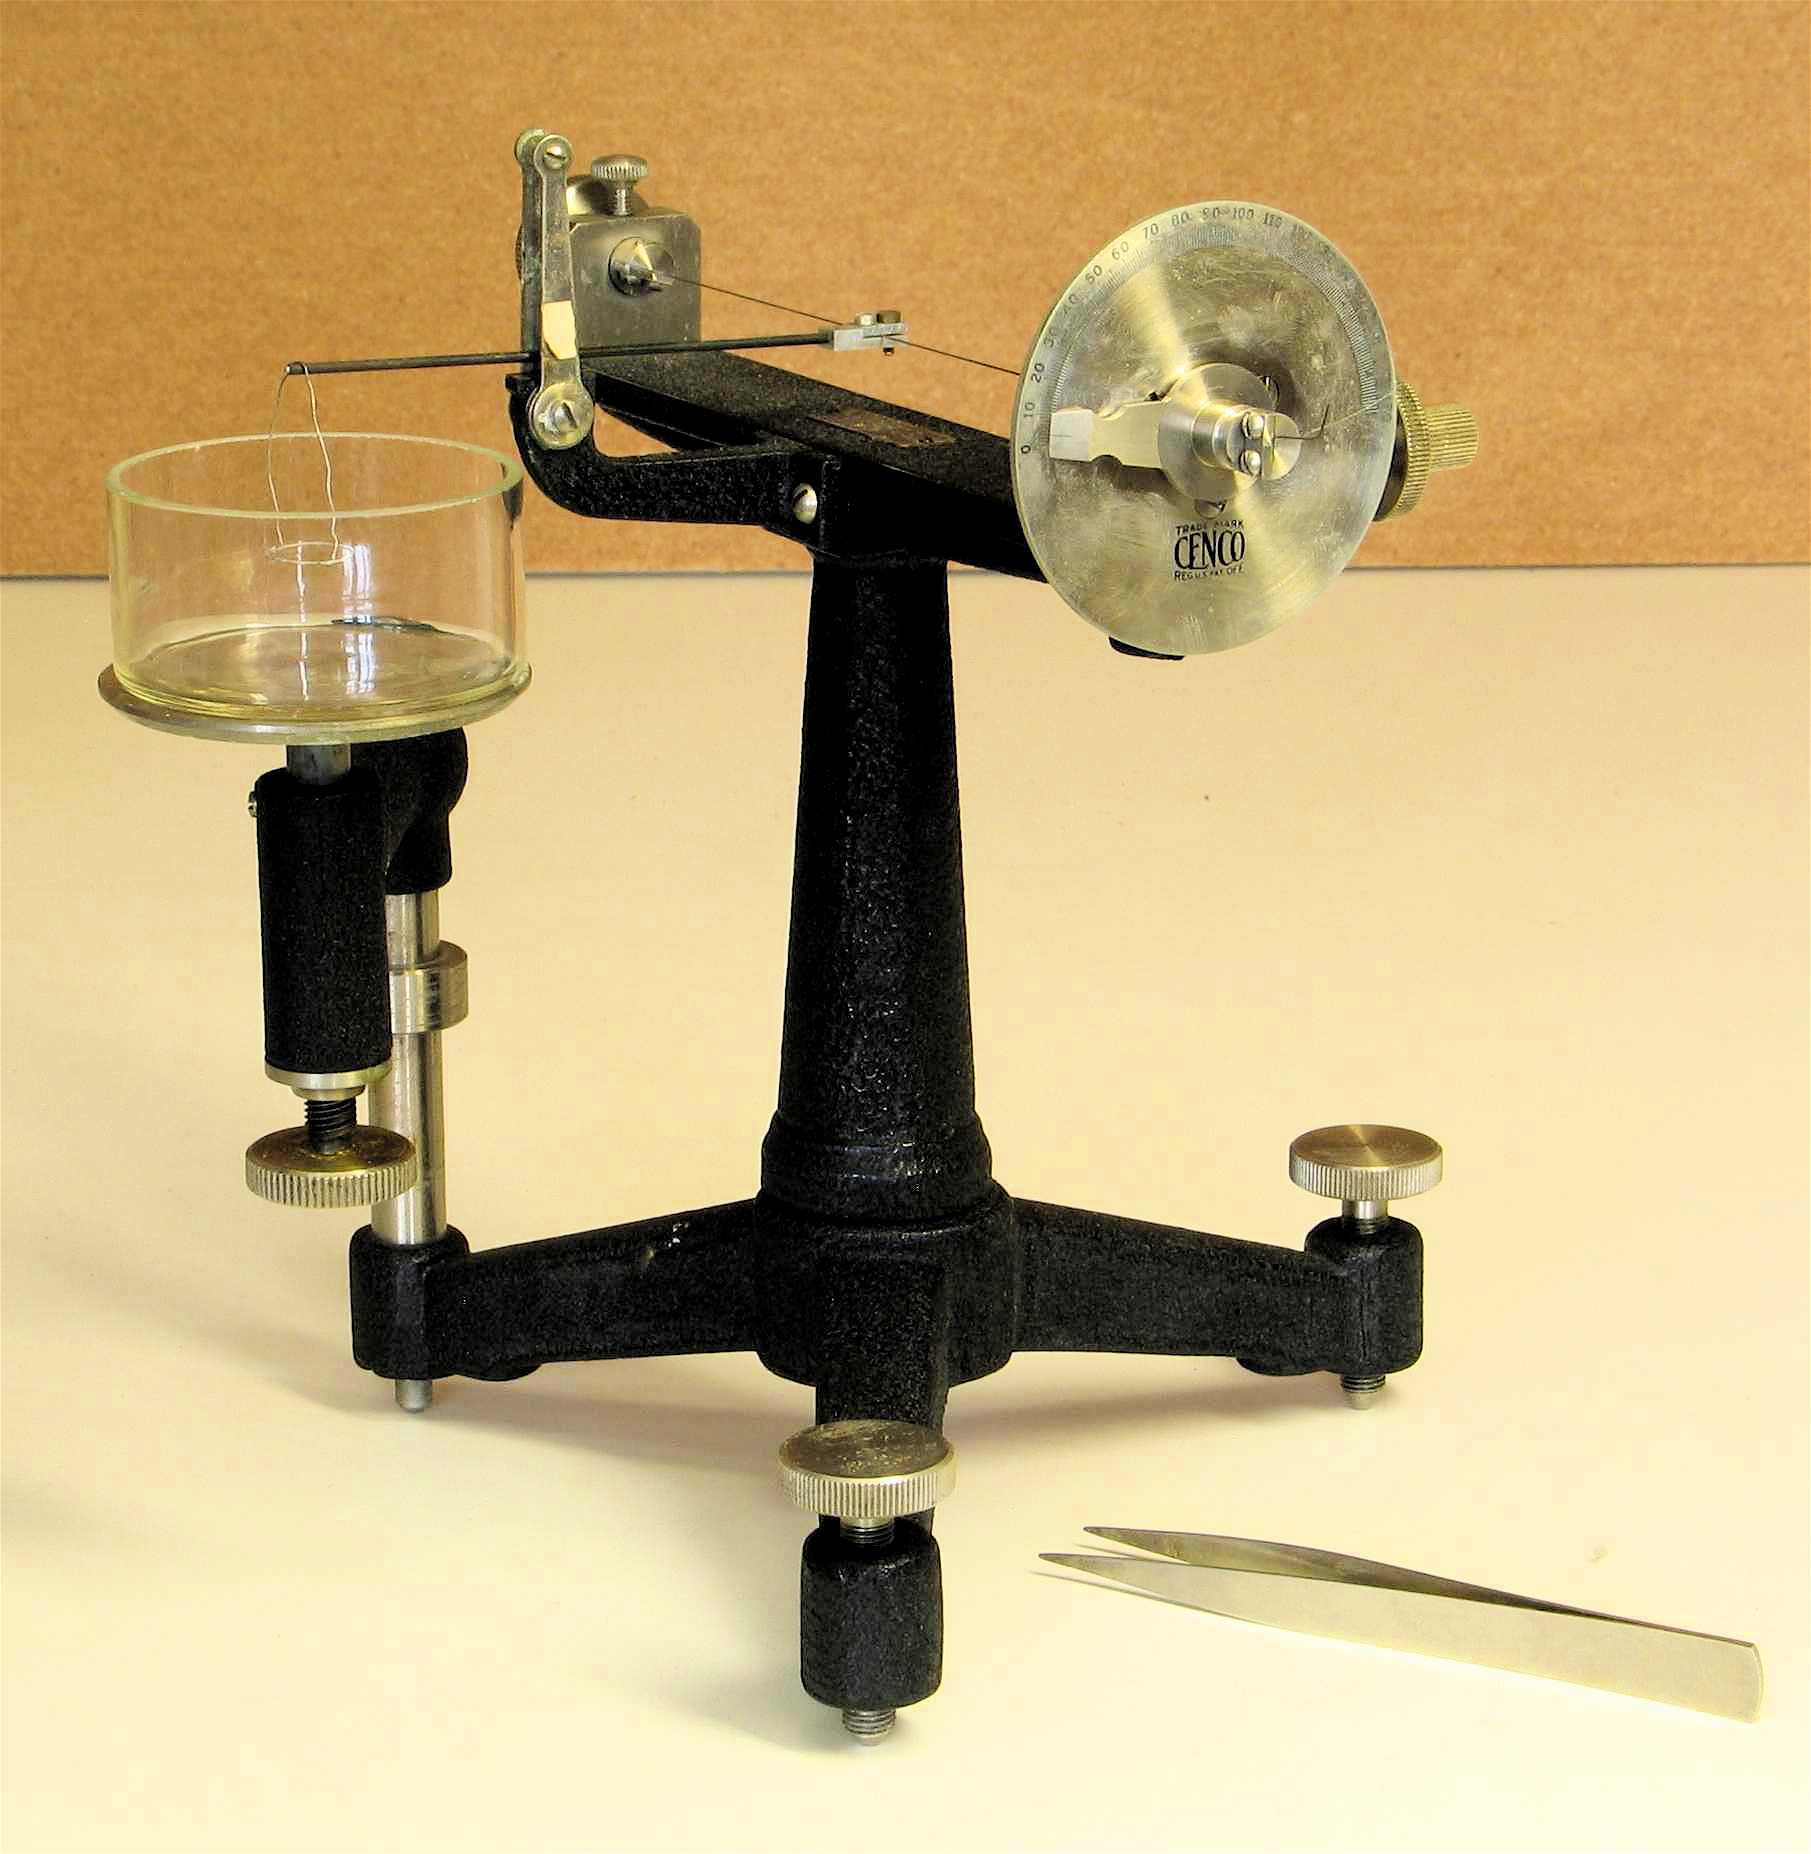 Tensiomètre de Lecomte du Noüy
(Mesure de la tension superficielle des liquides)